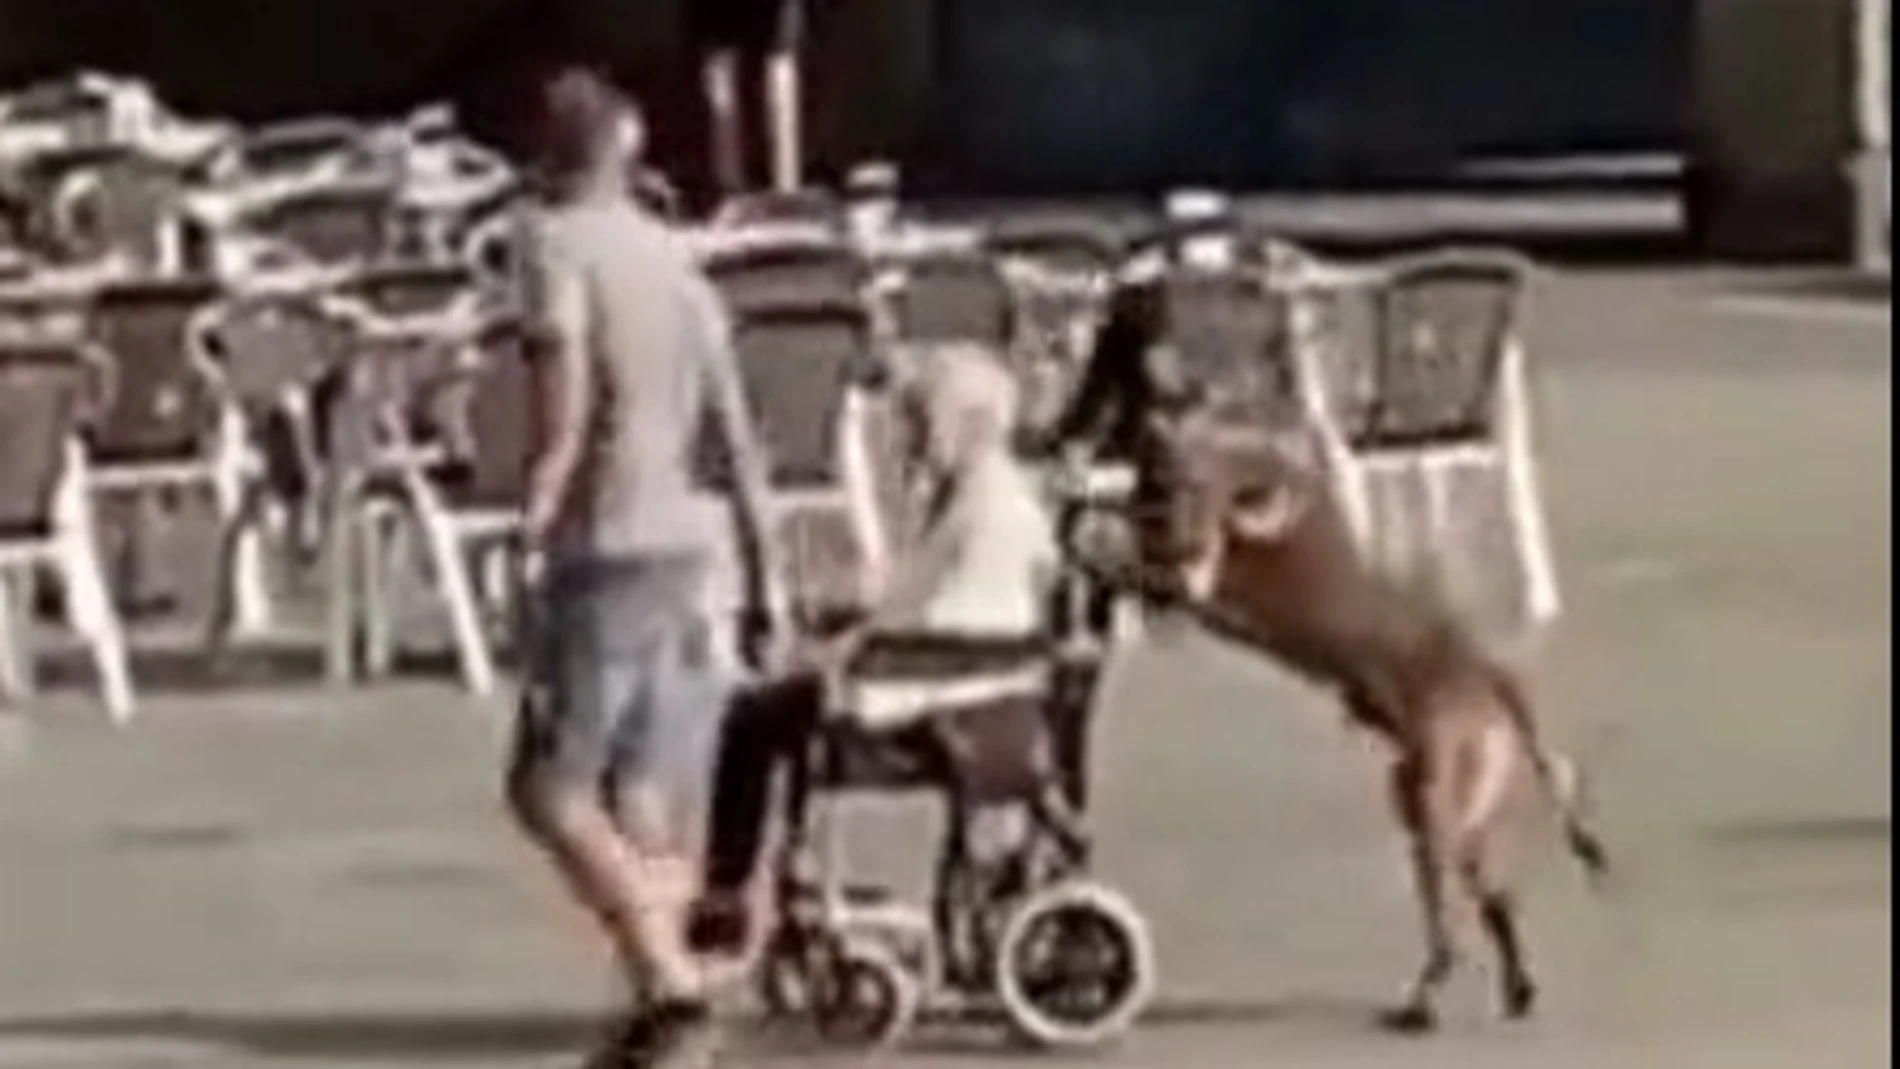 Un perro empuja la silla de ruedas de su dueña por Salamanca